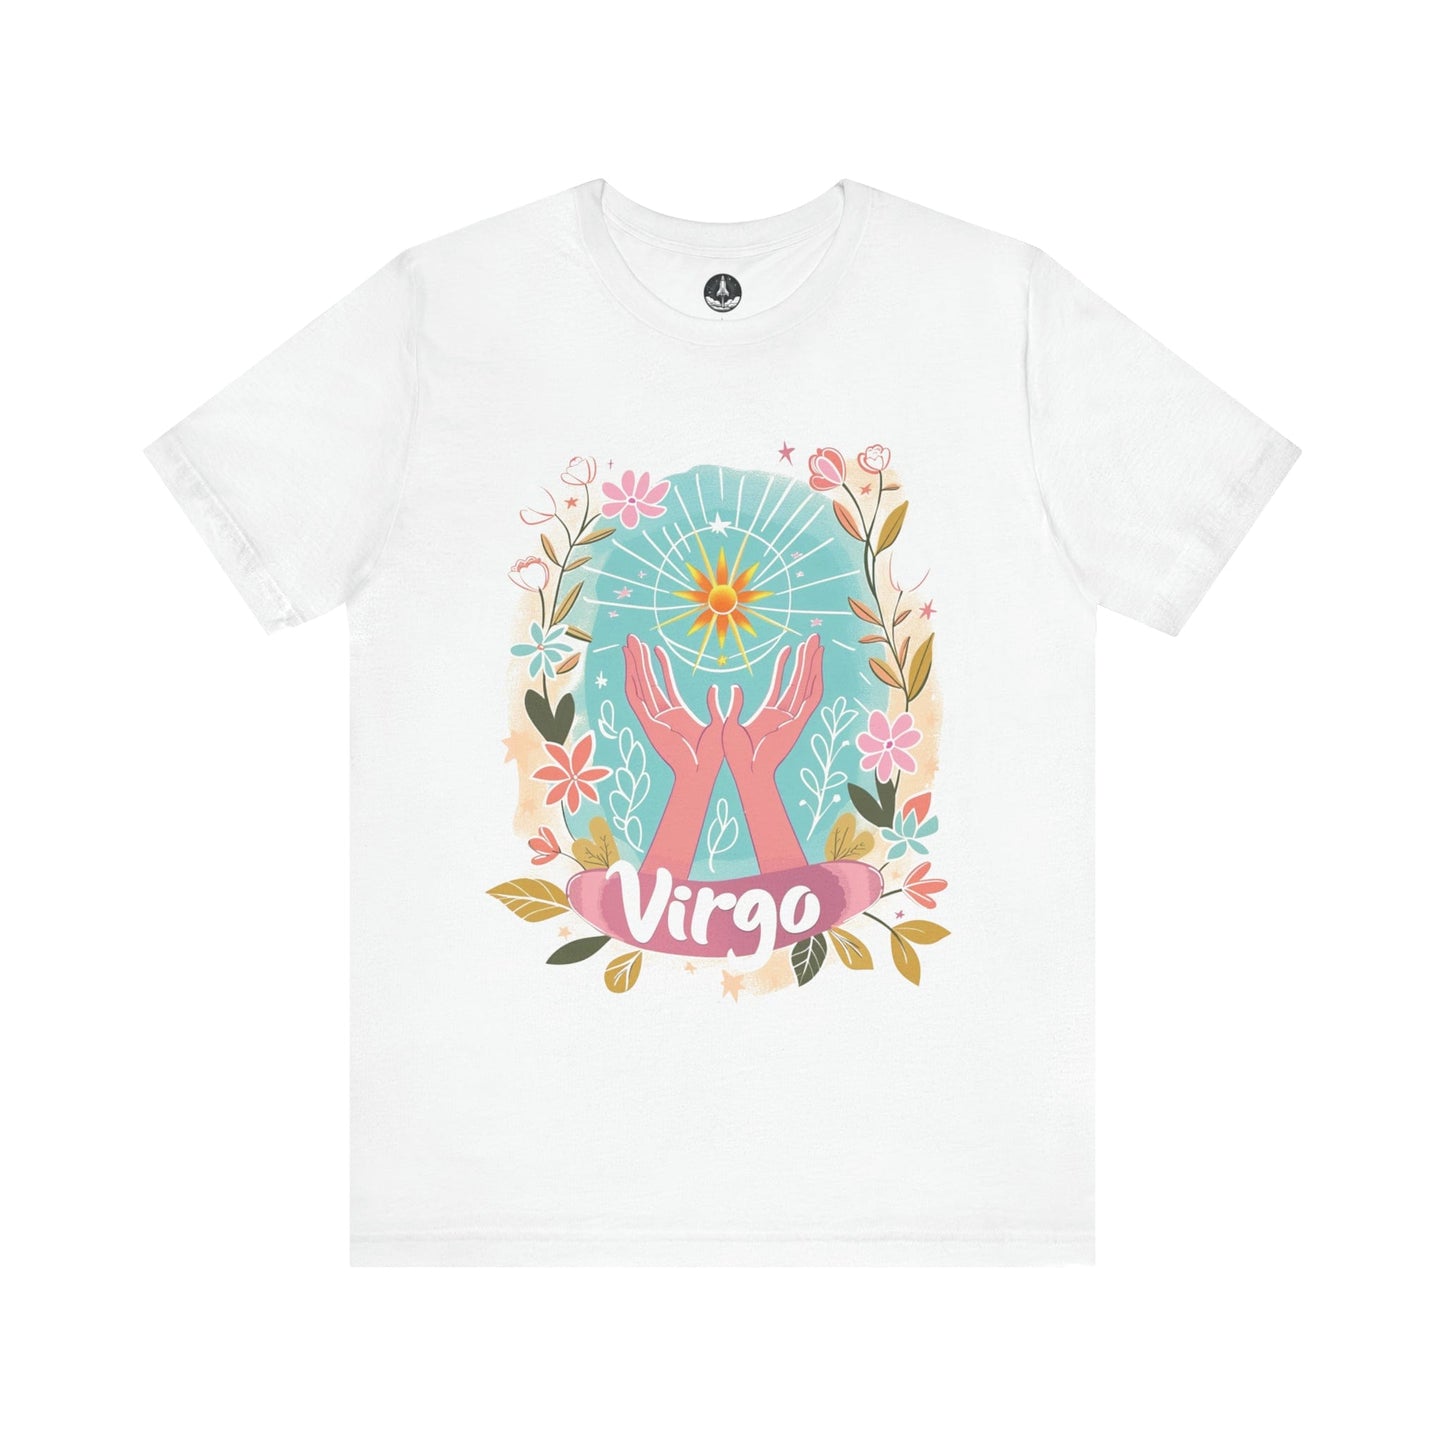 T-Shirt White / S Virgo's Bloom TShirt: Nurturing Nature's Beauty